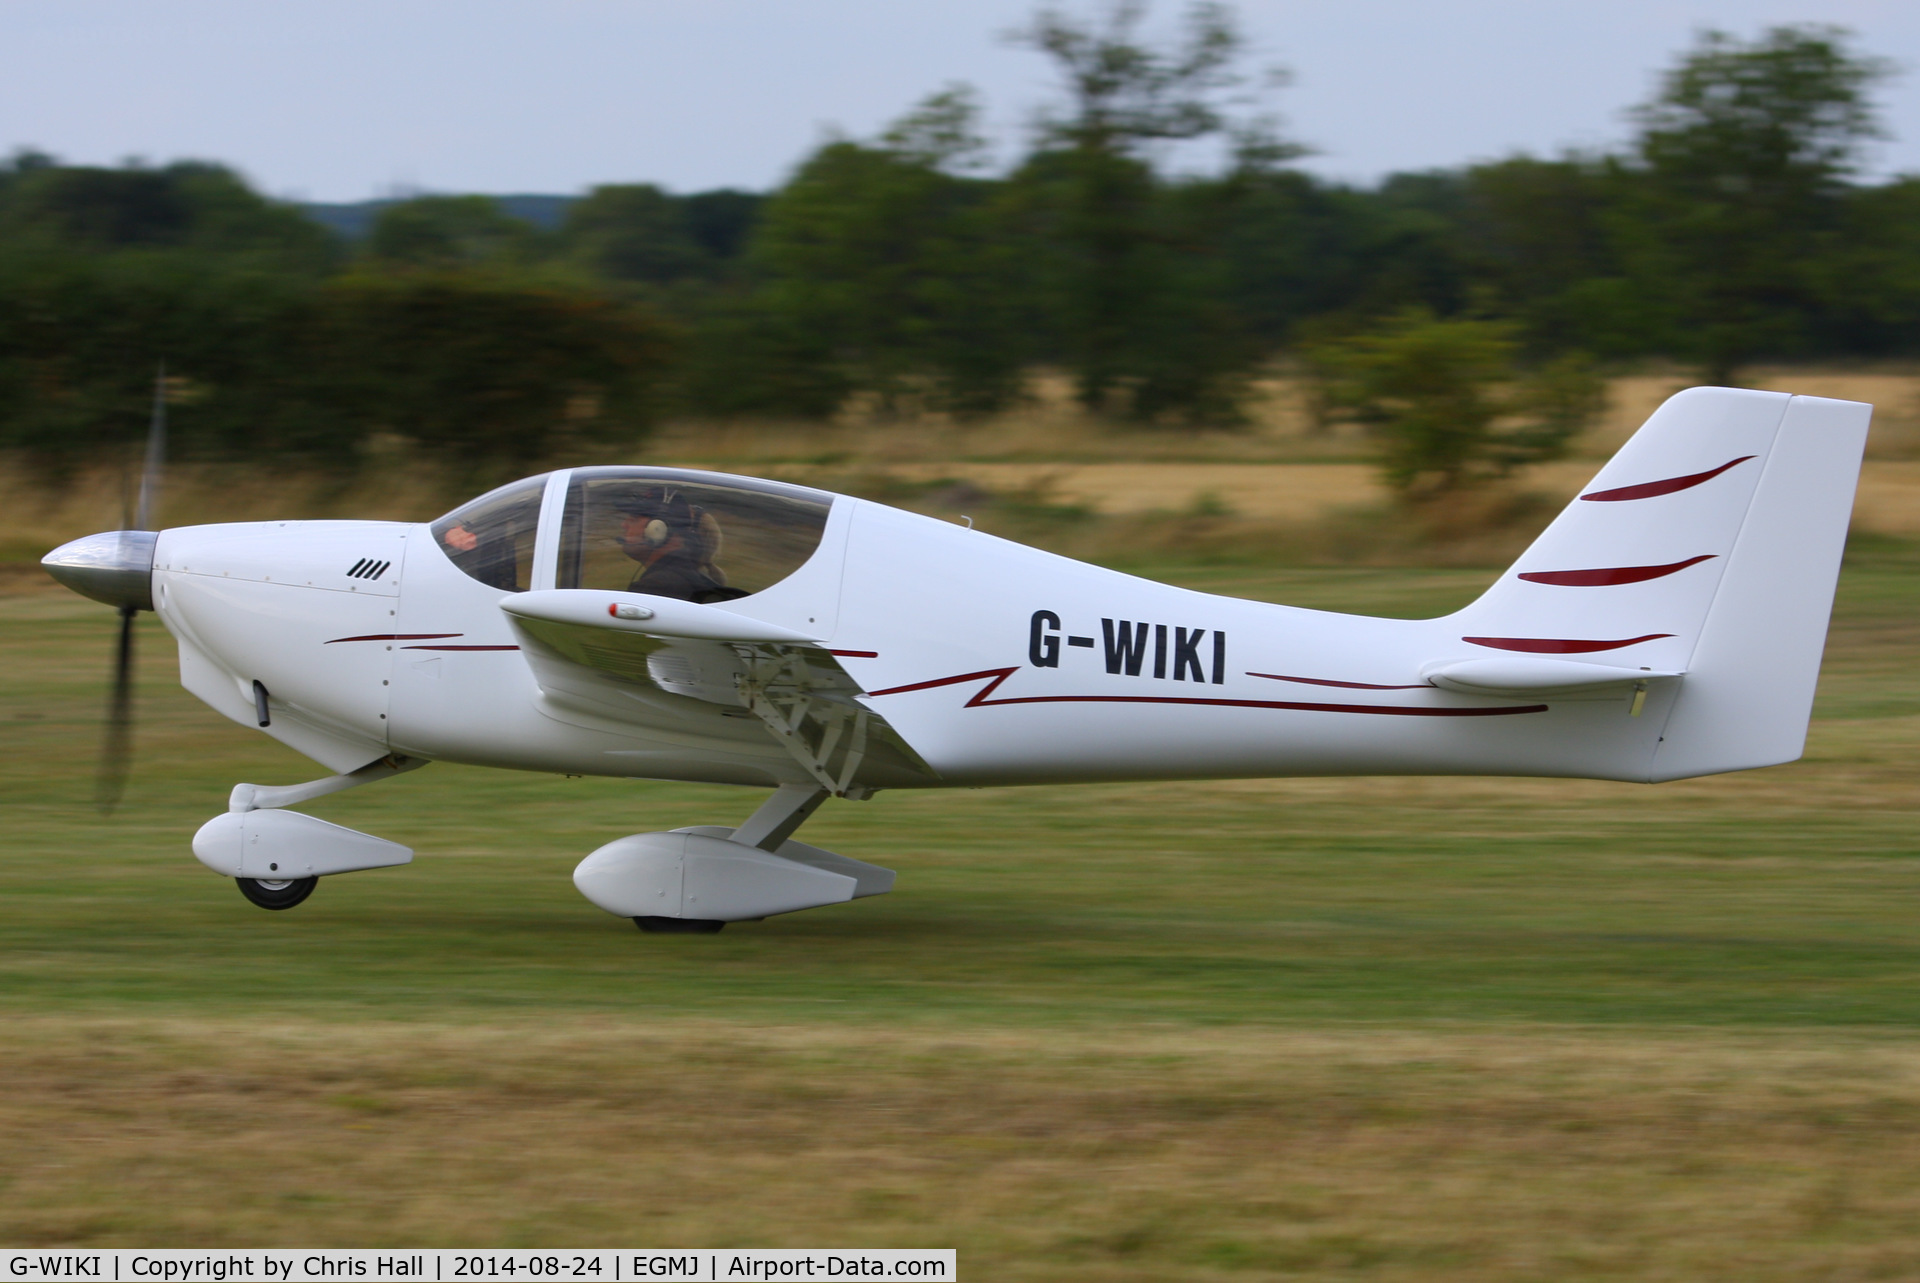 G-WIKI, 2011 Europa XS Tri-Gear C/N PFA 247-14095, at the Little Gransden Airshow 2014